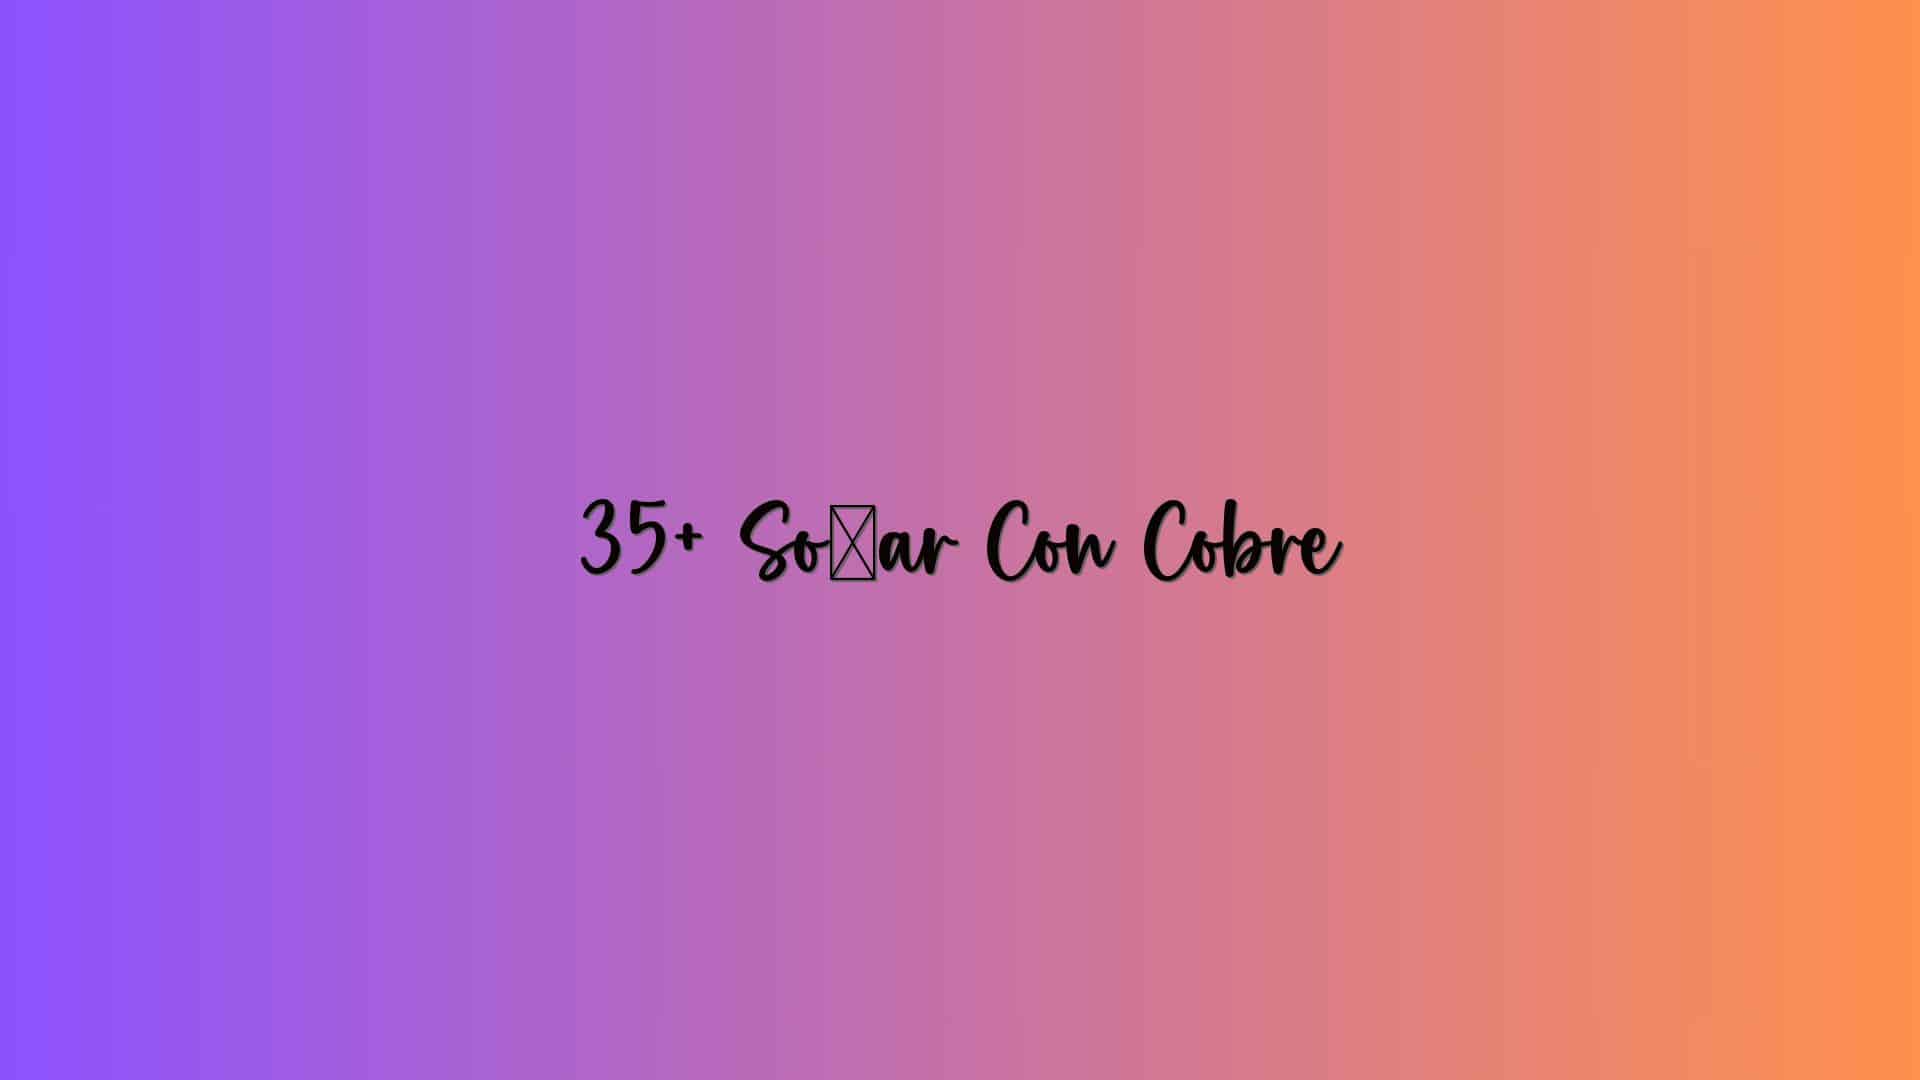 35+ Soñar Con Cobre